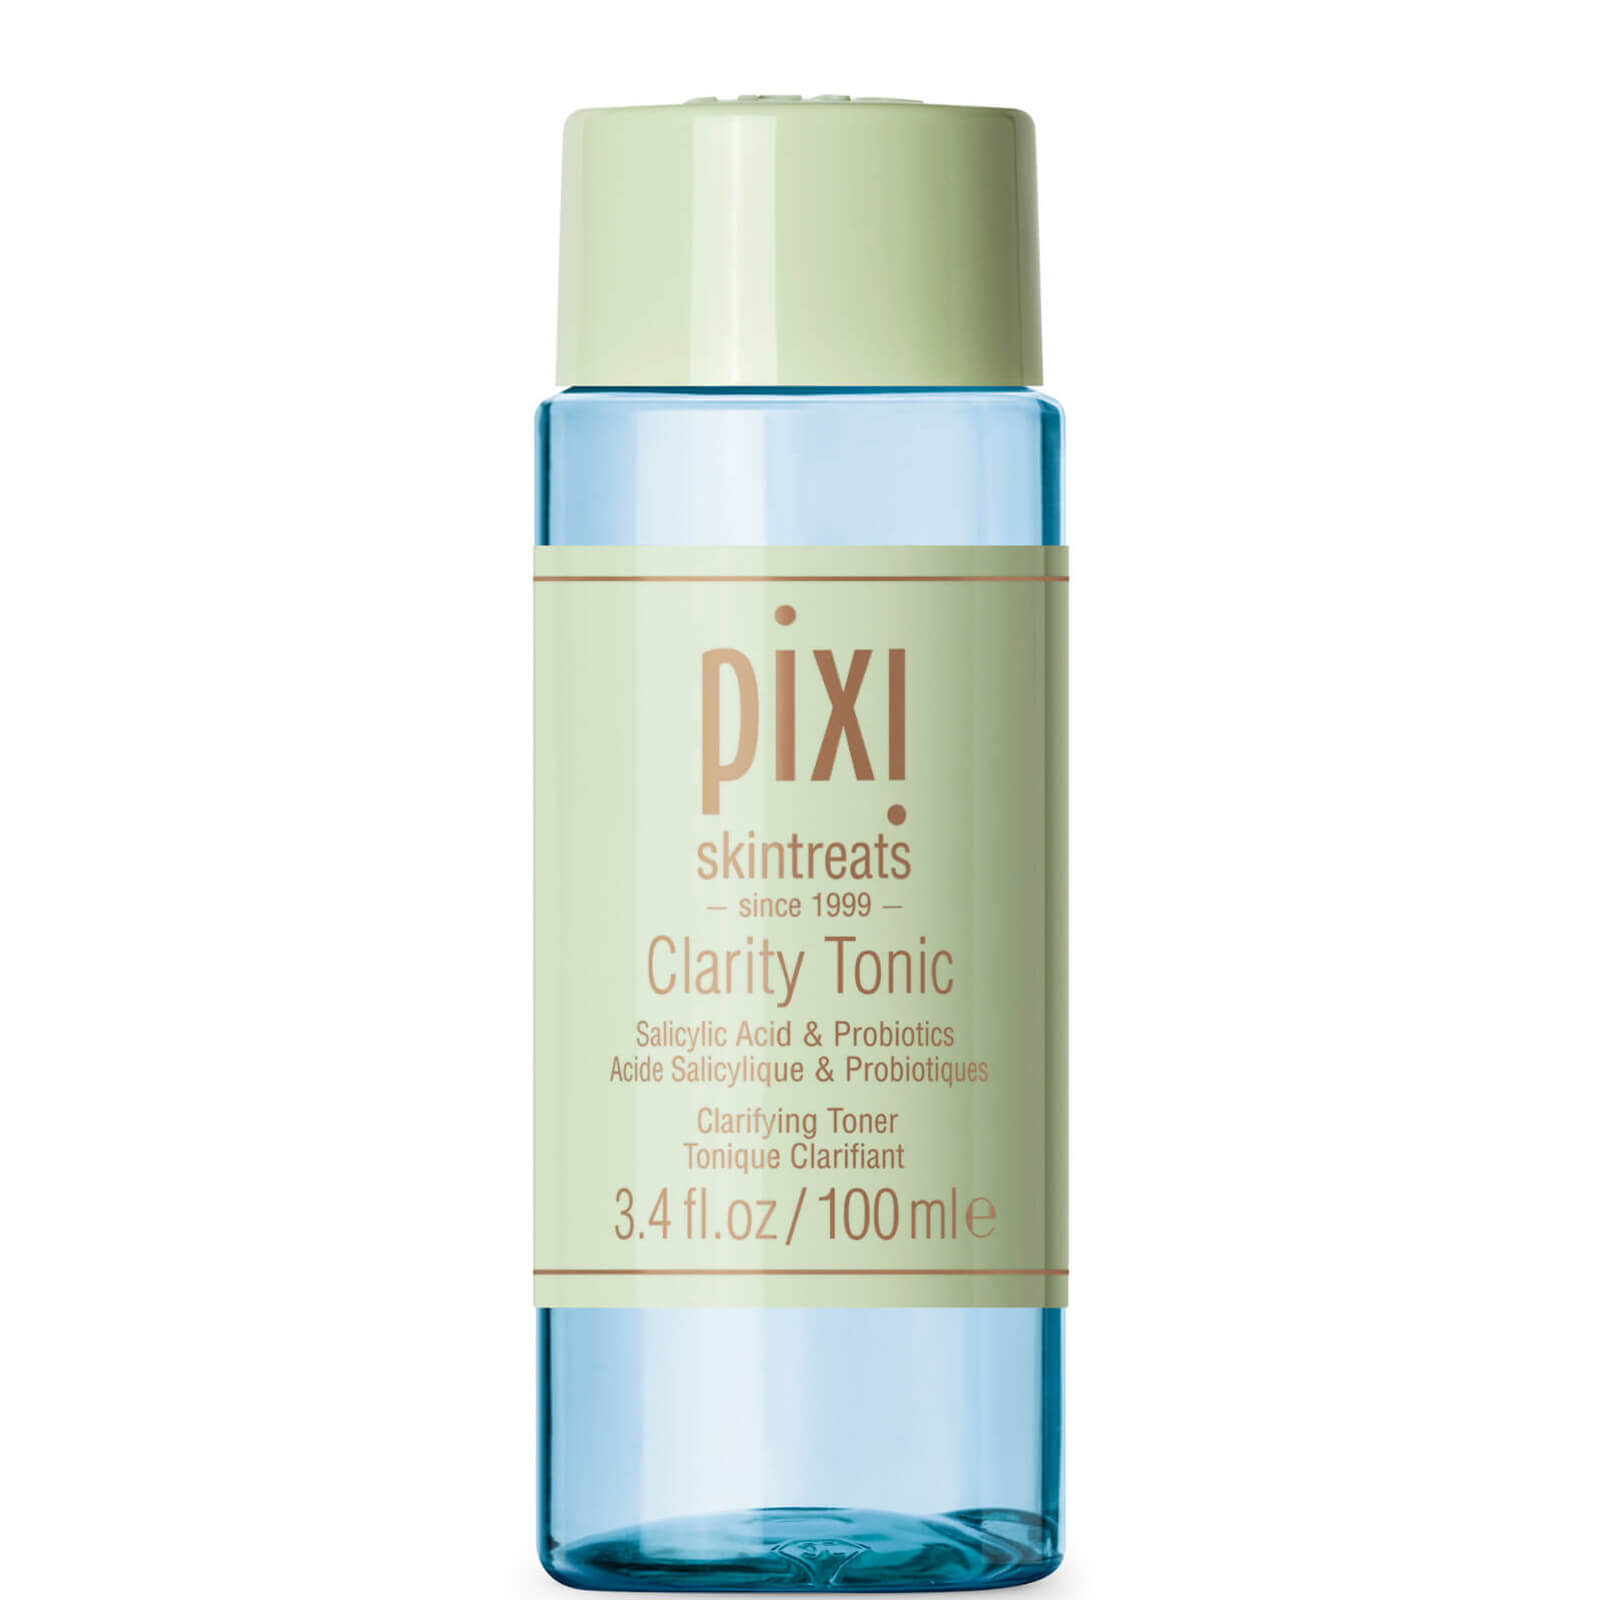 Photos - Facial / Body Cleansing Product Pixi Clarity Tonic 100ml Salicylic Acid Toner